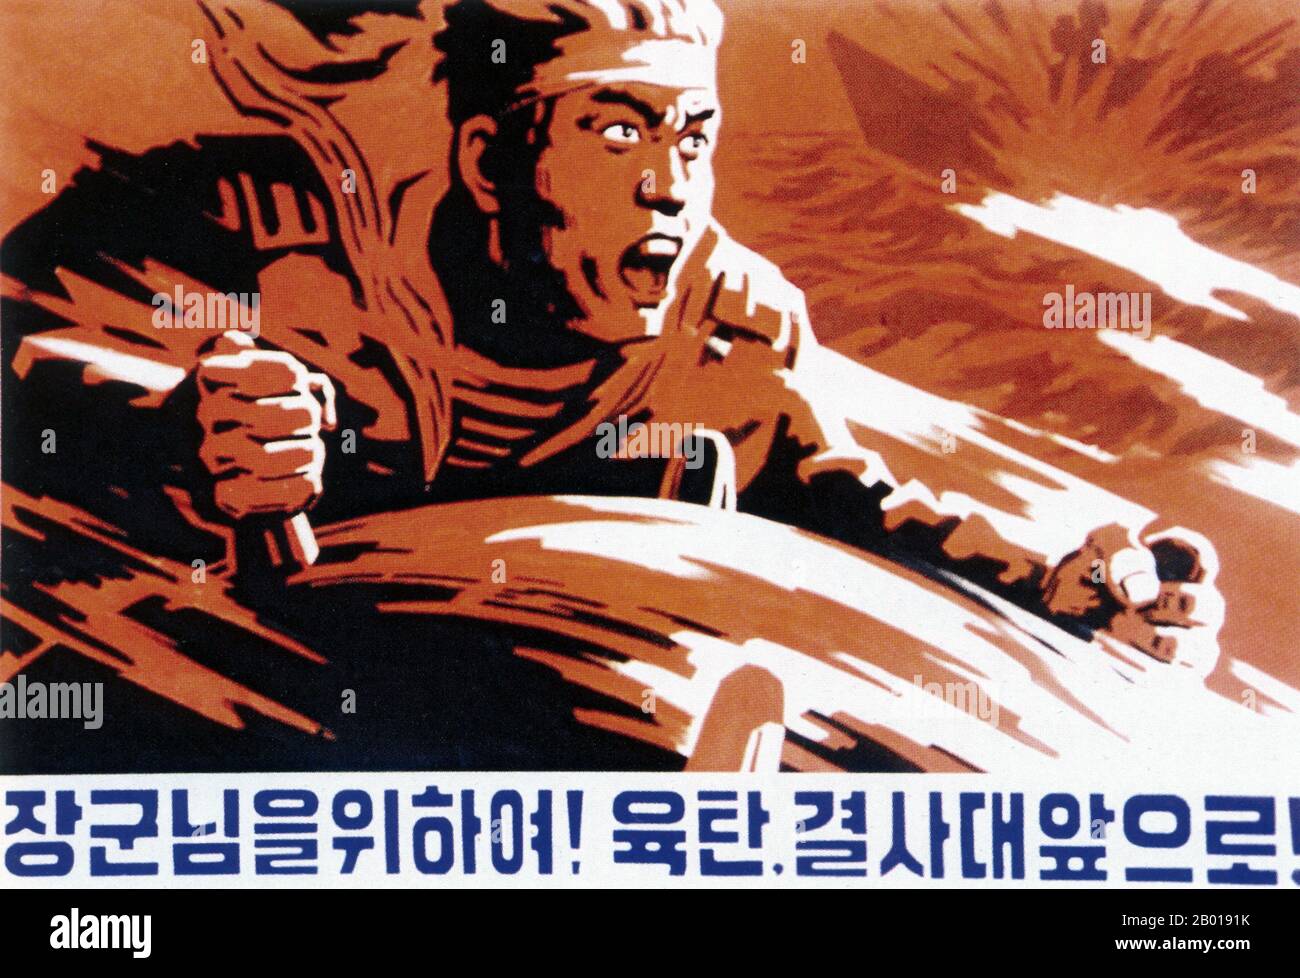 Corée : affiche de propagande nord-coréenne (RPDC) glorifiant les forces armées nord-coréennes - 'pour le général! Équipe de suicide, vers l'avant!', c. 1950s. Le réalisme socialiste est un style d'art réaliste qui s'est développé sous le socialisme en Union soviétique et est devenu un style dominant dans d'autres pays communistes. Le réalisme socialiste est un style téléologique ayant pour objectif la poursuite des objectifs du socialisme et du communisme. Bien qu'elle soit liée, elle ne doit pas être confondue avec le réalisme social, un type d'art qui dépeint de façon réaliste des sujets de préoccupation sociale. Banque D'Images